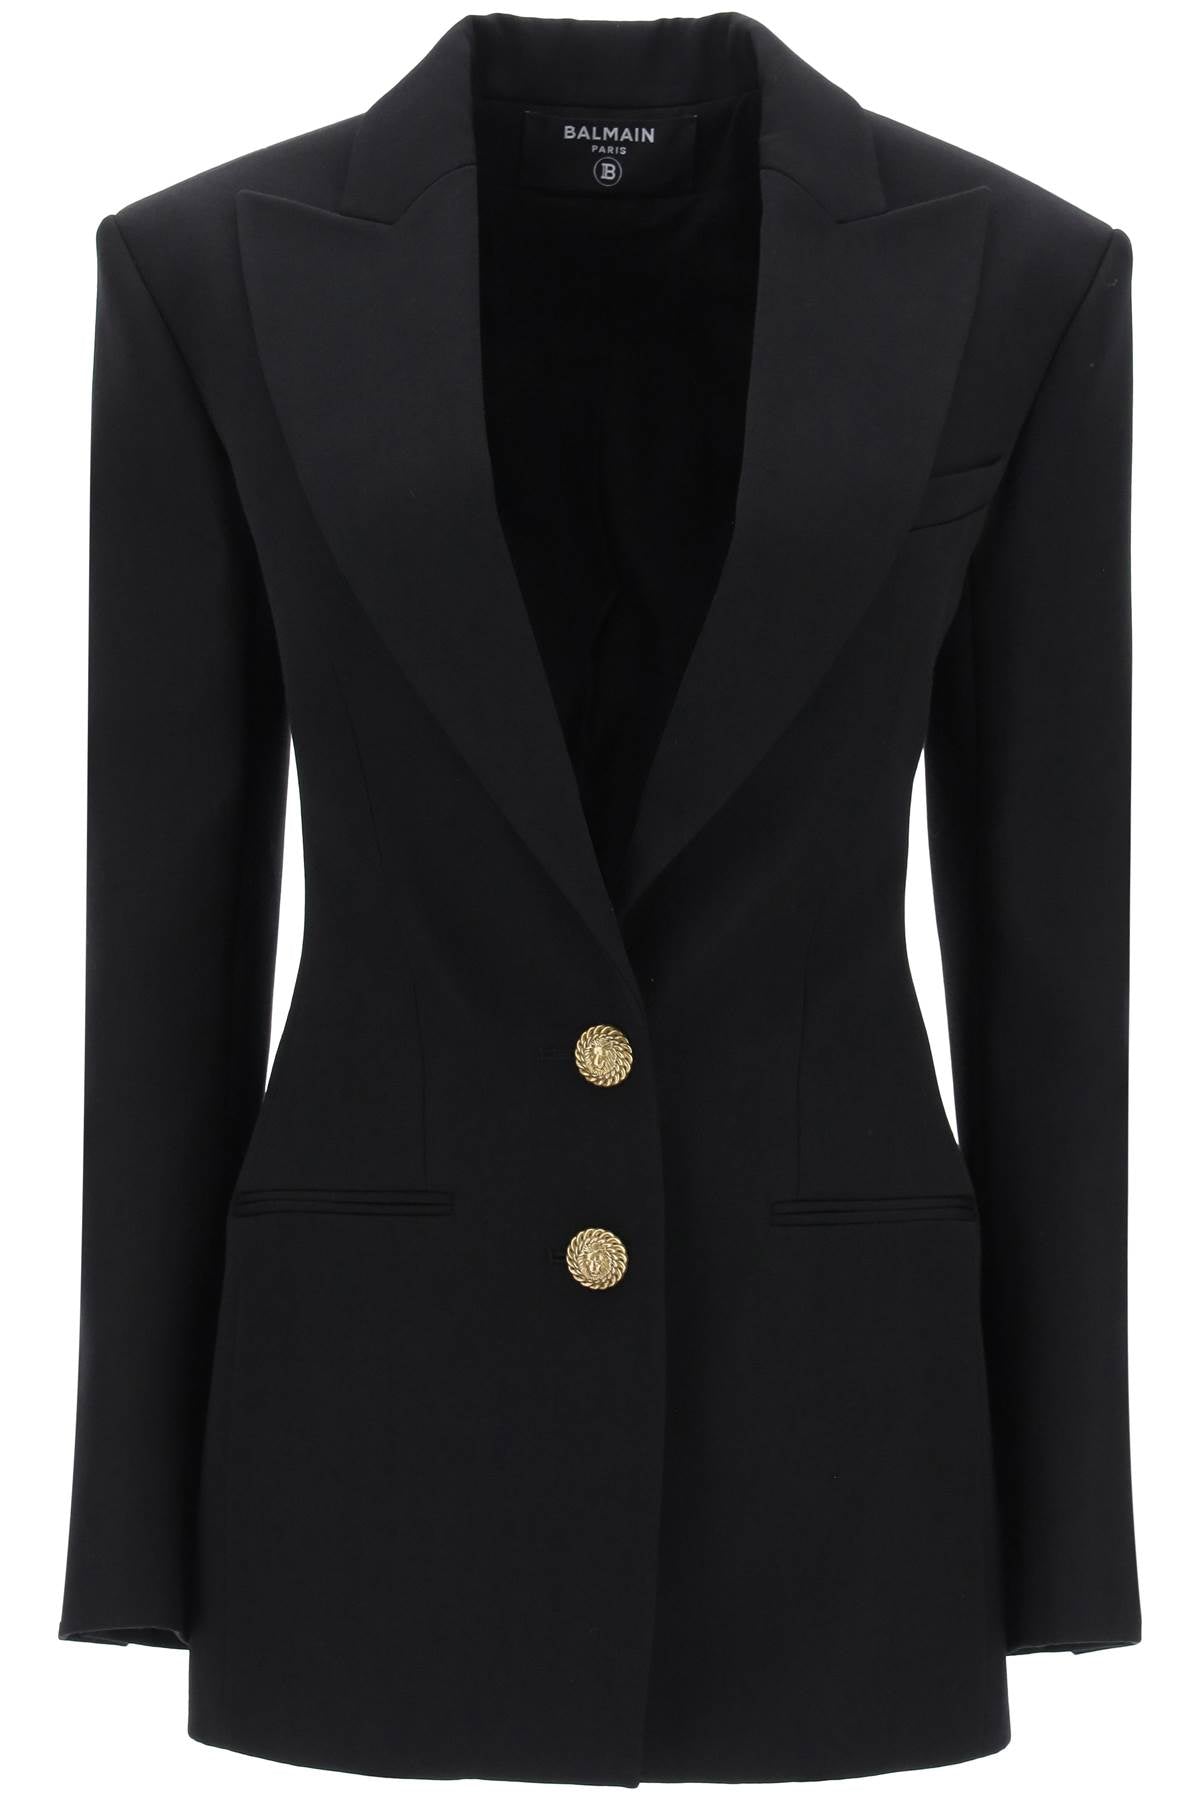 Áo khoác lông cừu đen tinh tế dành cho phụ nữ - Chất lượng cao cấp với khóa nút đính huy hiệu sư tử màu vàng nổi bật, kiểu dáng vừa vặn và cổ áo có cấu trúc